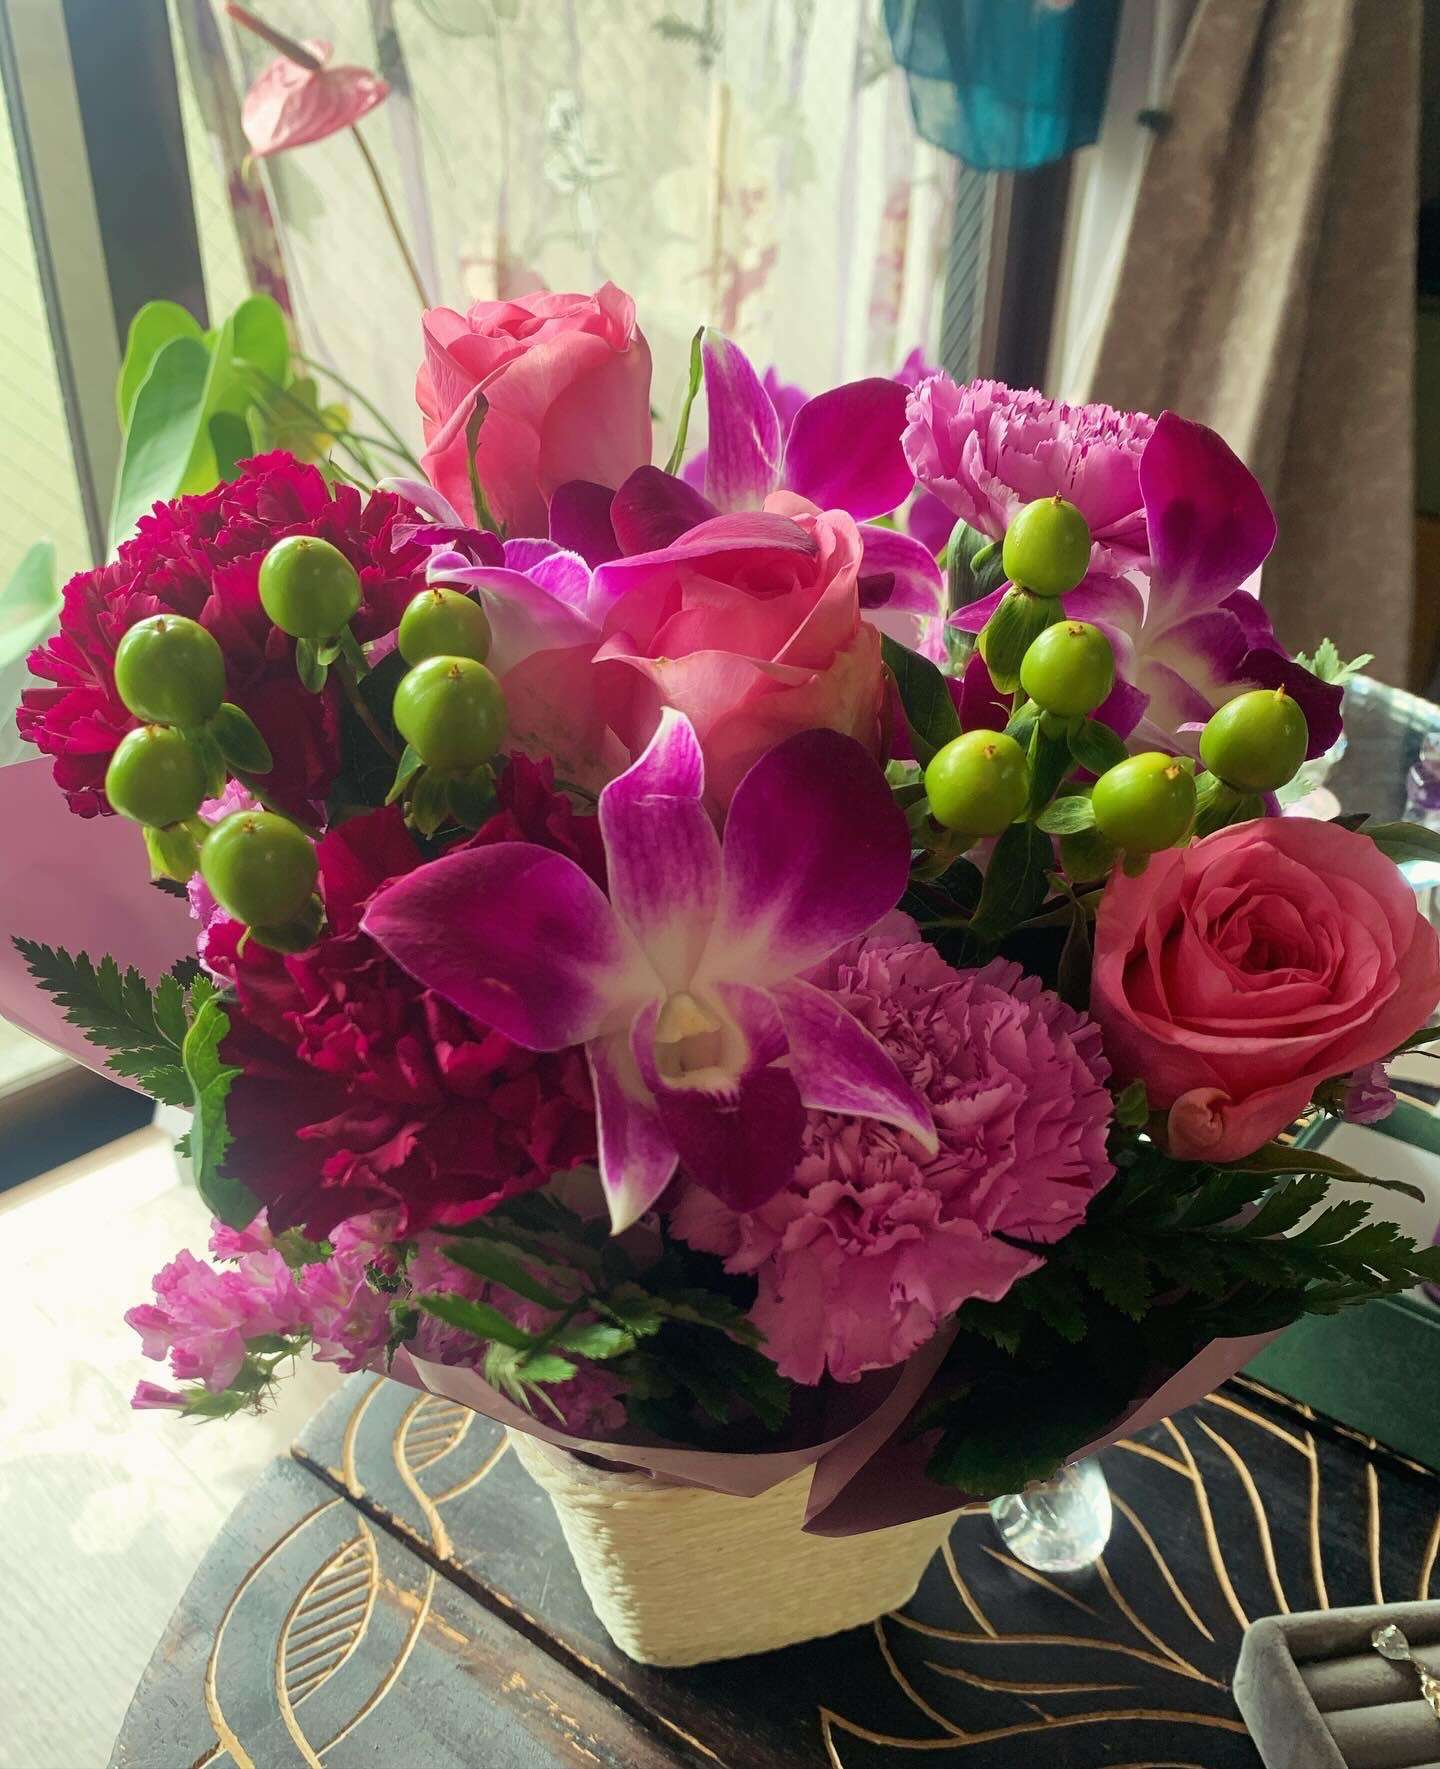 TwinStar 20周年お花を頂きました♡ありがとうございます！